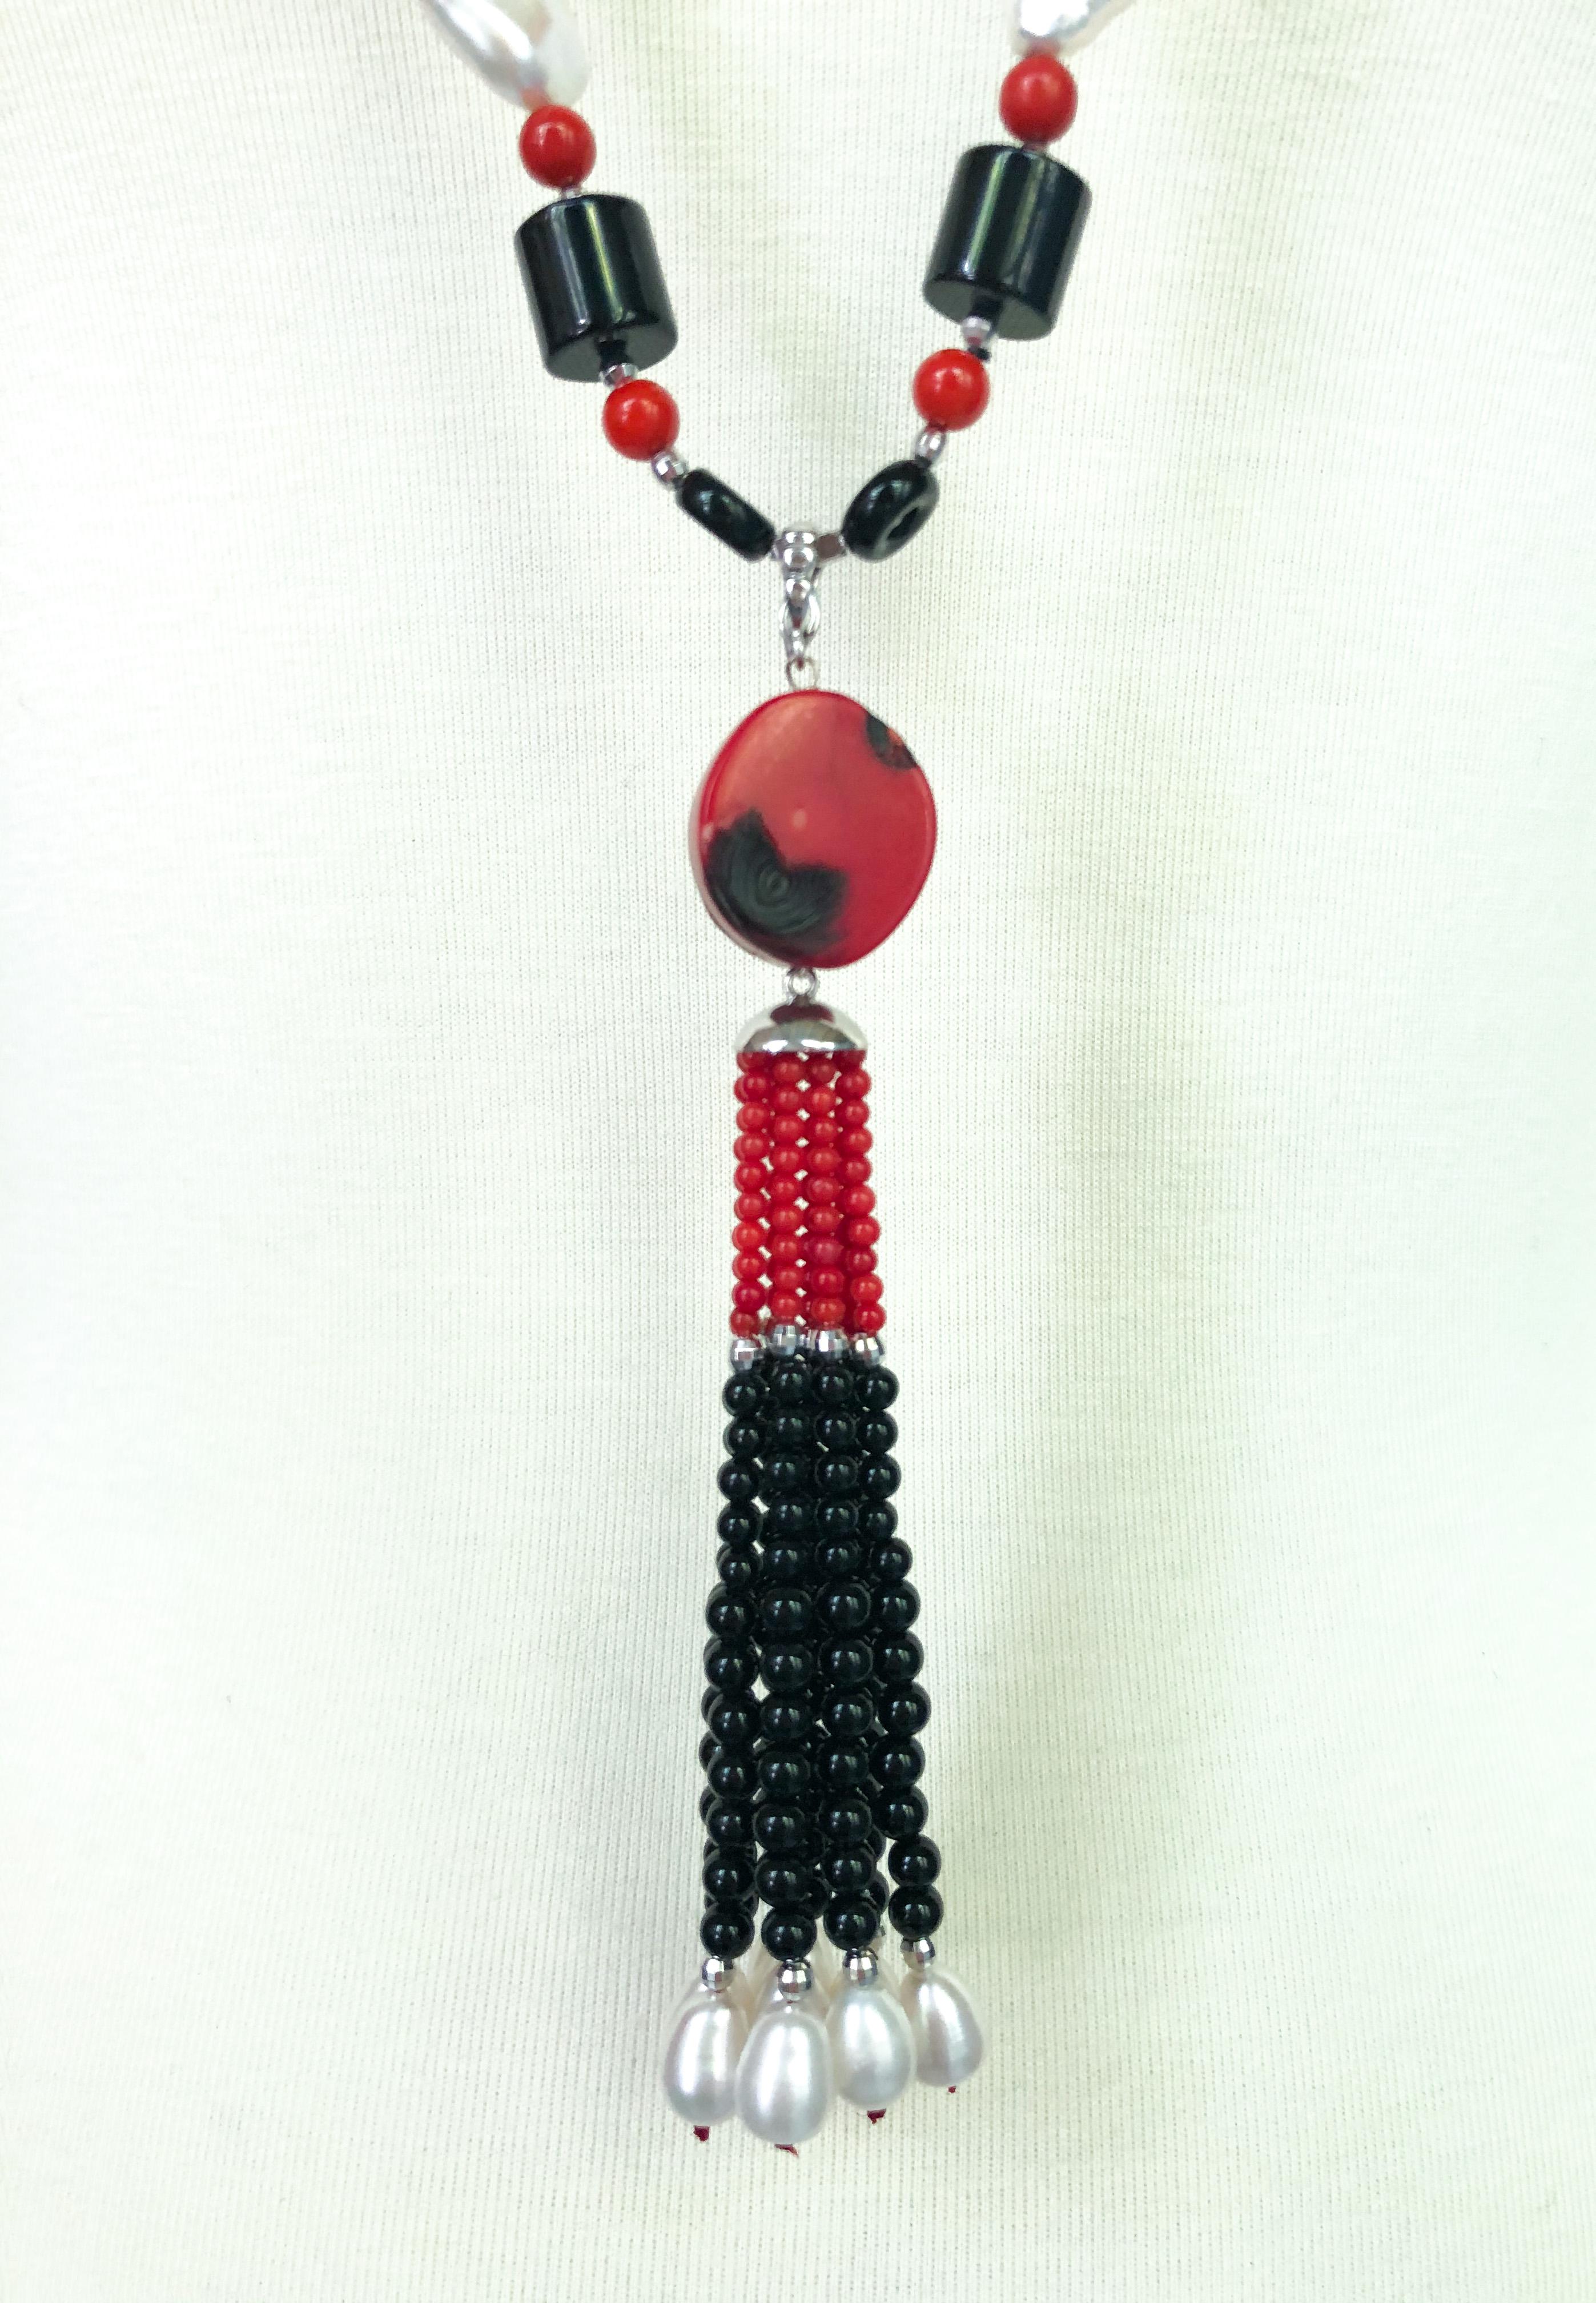 Le collier unique de Marina J., de style art déco, présente une variété de formes : perles sphériques, perles d'onyx cylindriques, perles de corail en forme de larme, etc. Cette pièce frappante imite les bijoux des années folles avec son design